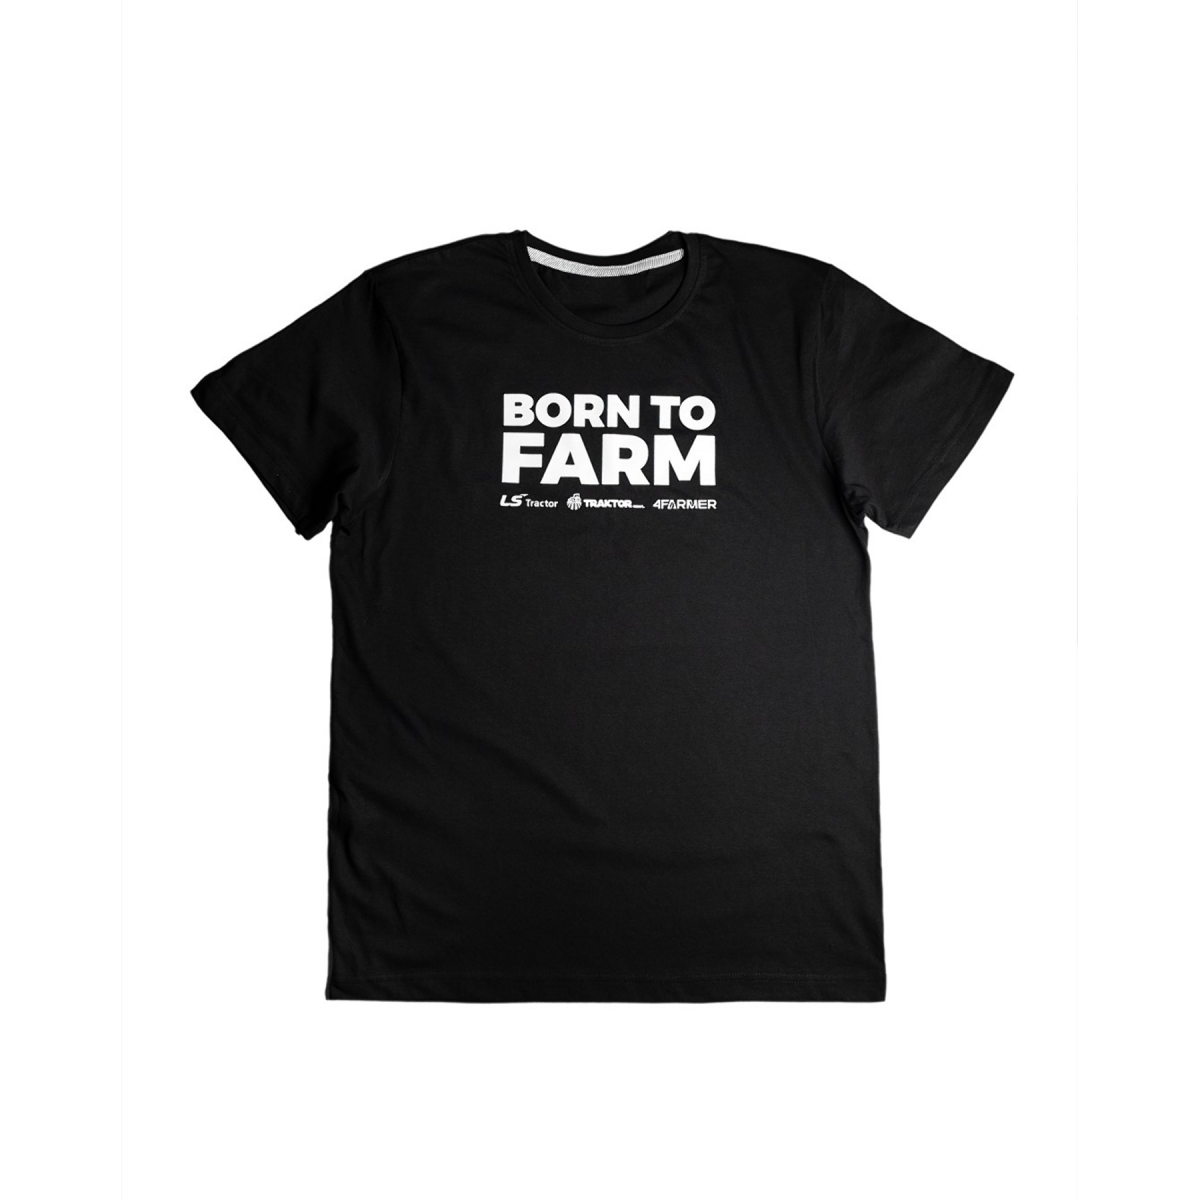 T-shirt "BORN TO FARM" pour homme